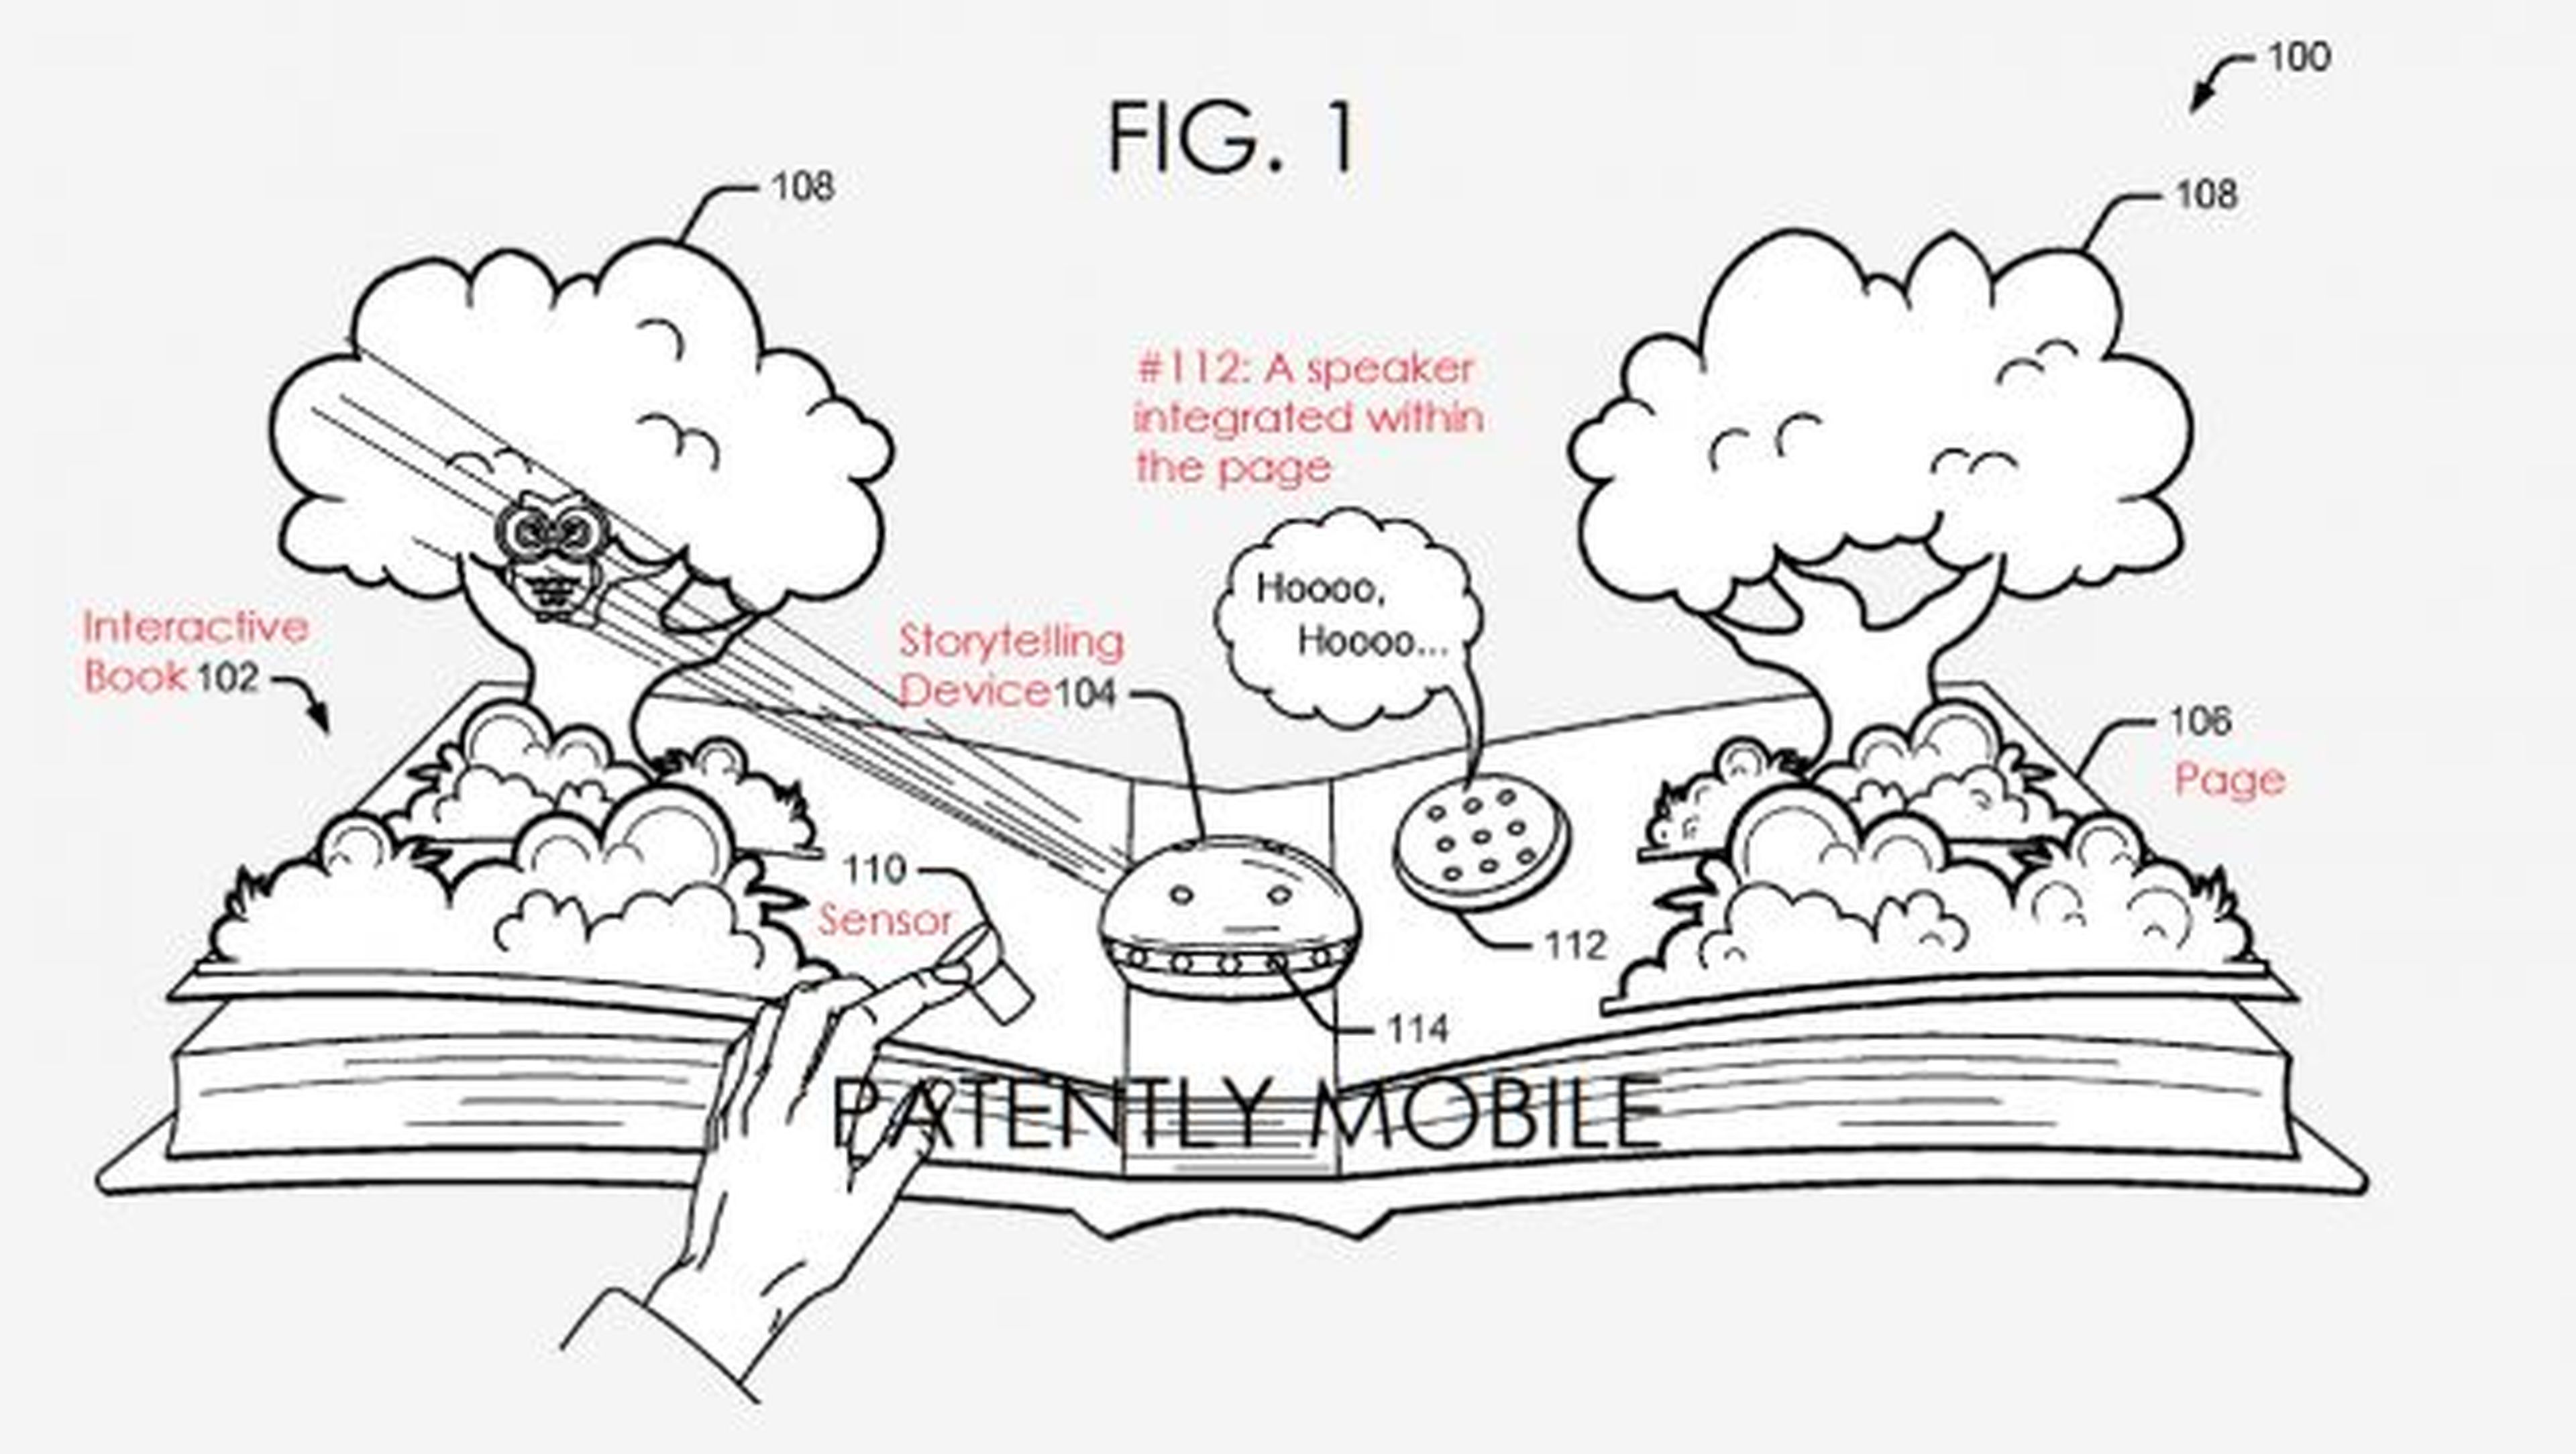 Imagen de la patente del libro interactivo presentada por Google